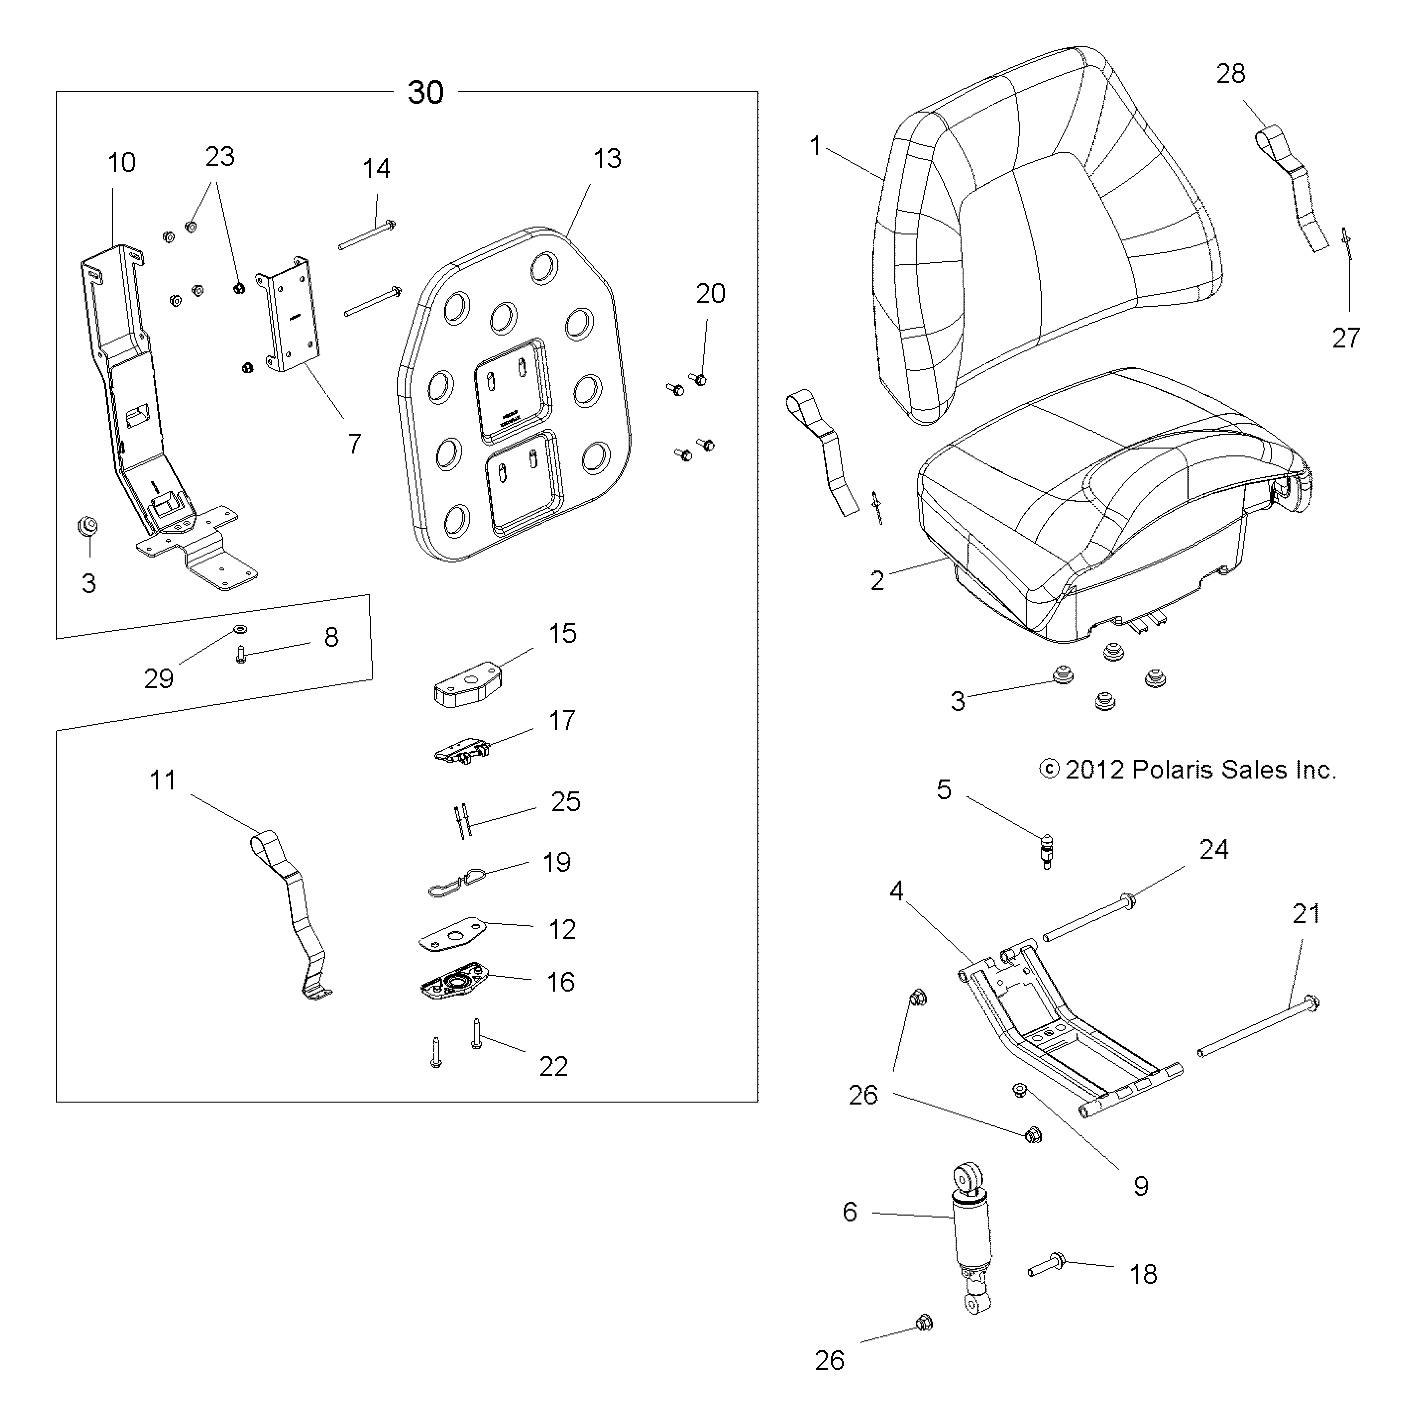 Foto diagrama Polaris que contem a peça 5437119